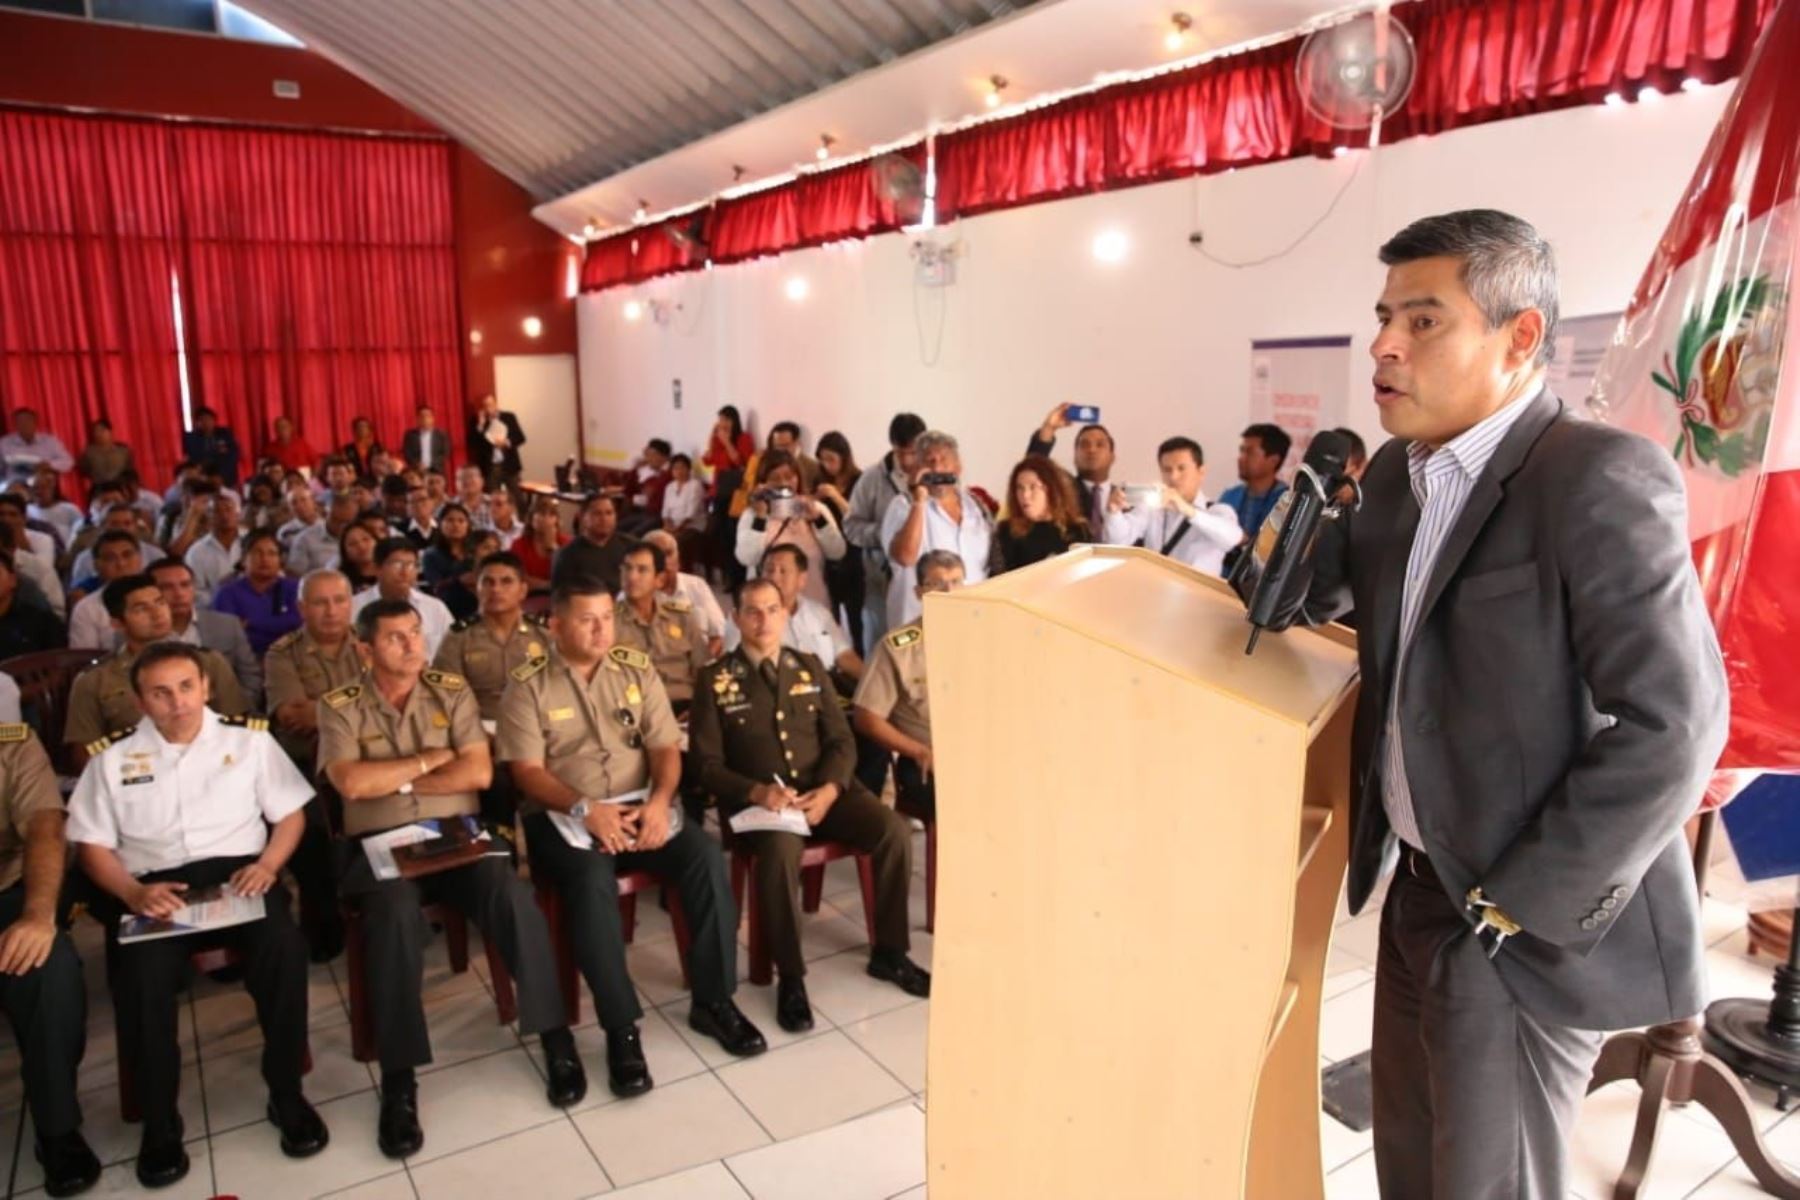 Congresista Luis Galarreta, presidente del Congreso, inaugura audiencia descentralizada en Chimbote.